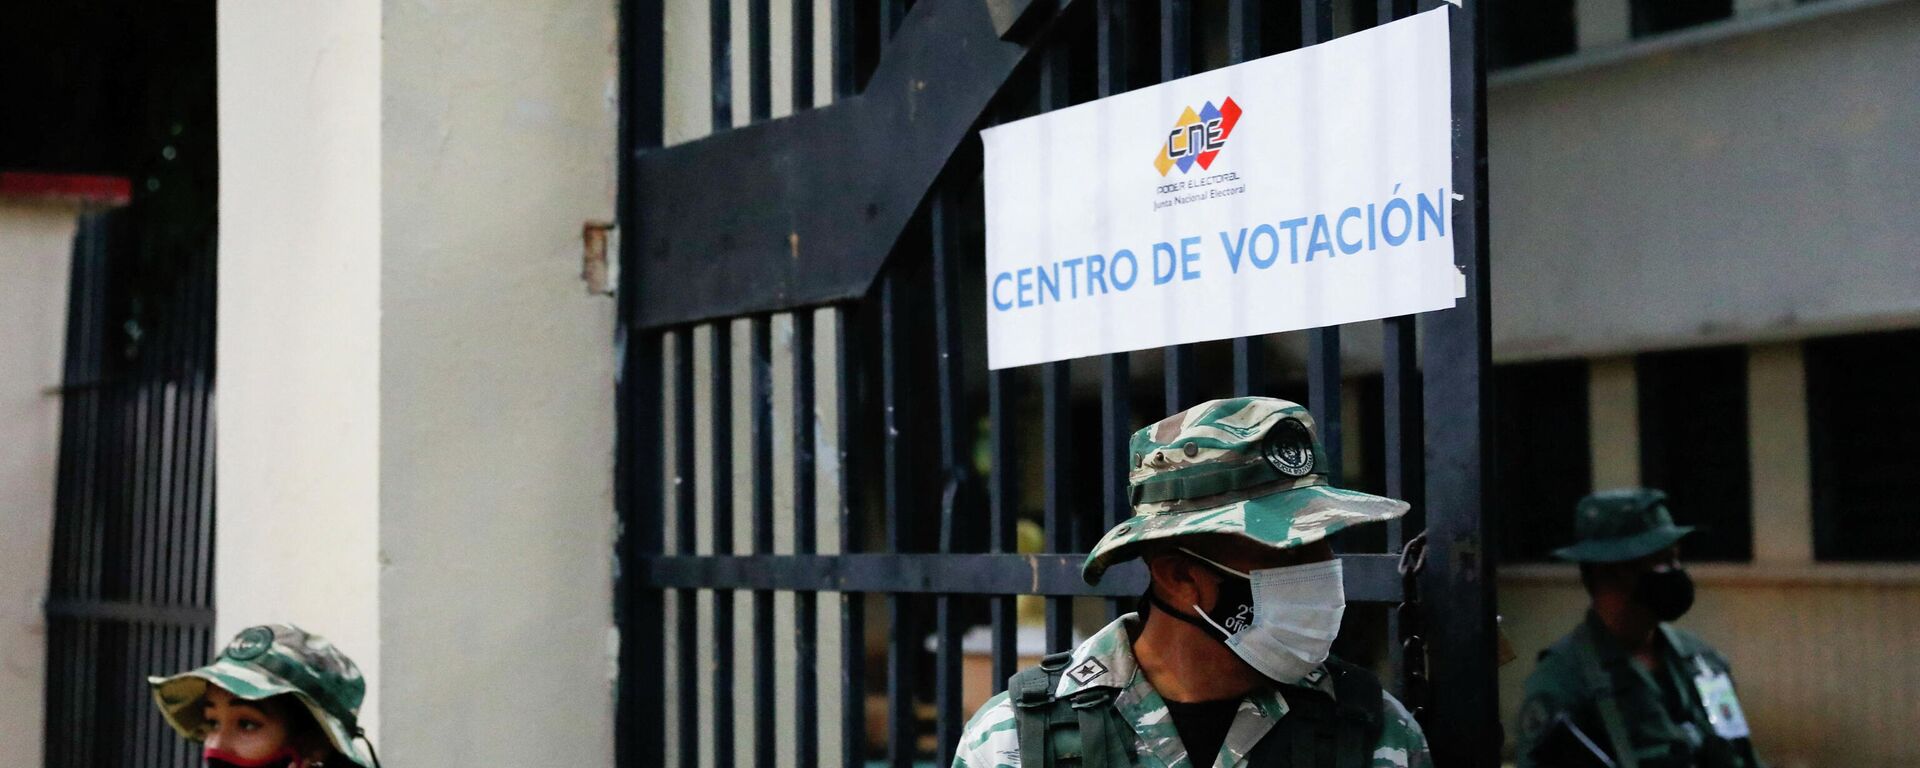 La votación en el estado de Barinas, oeste de Venezuela, el 9 de enero de 2022 - Sputnik Mundo, 1920, 09.01.2022